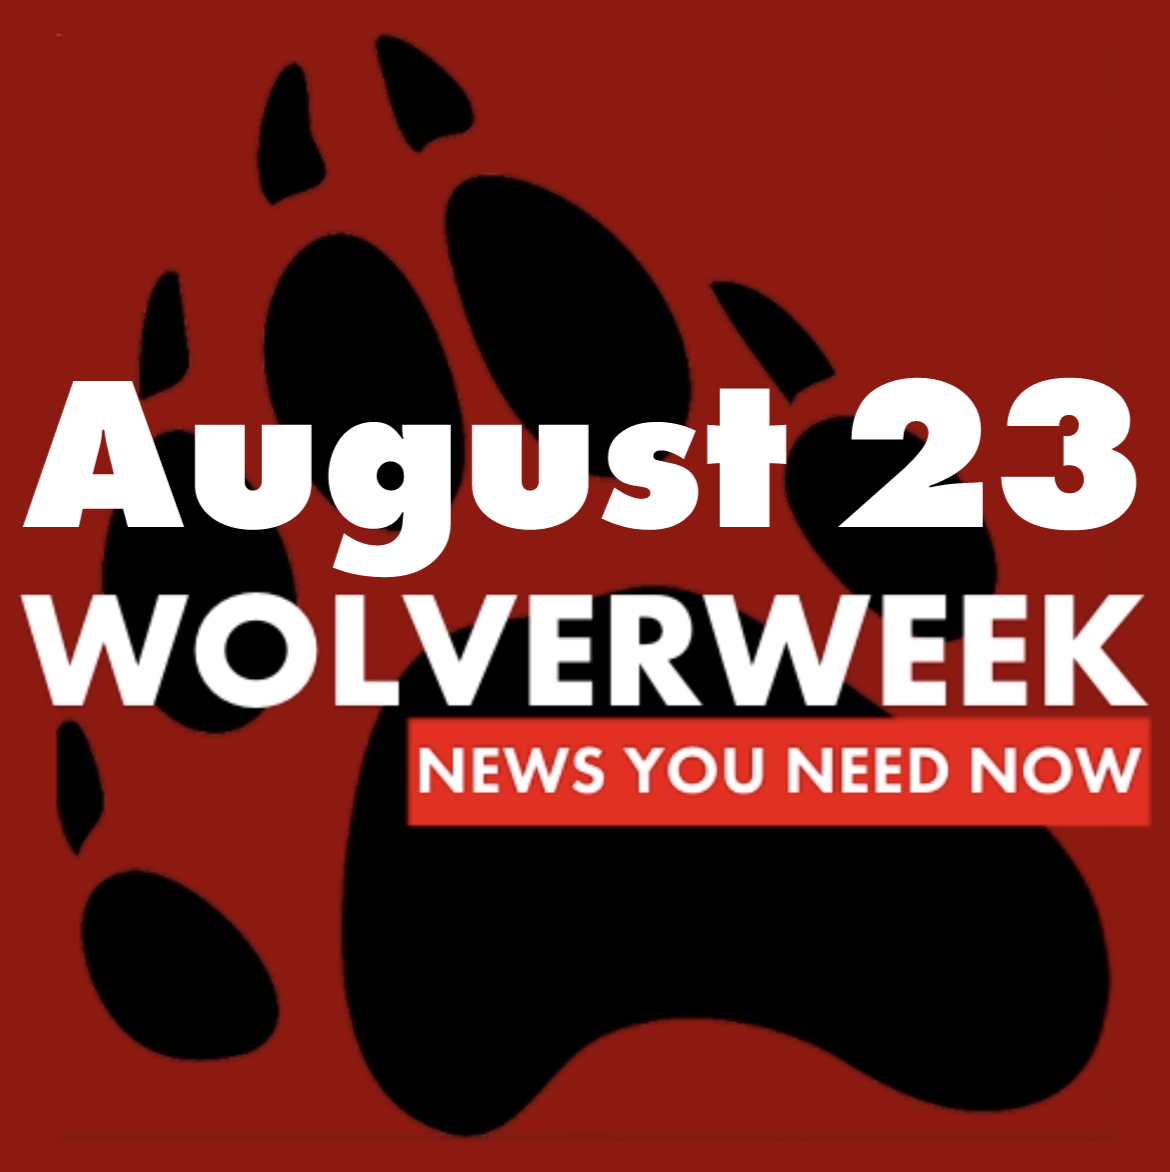 Wolverweek+8%2F23